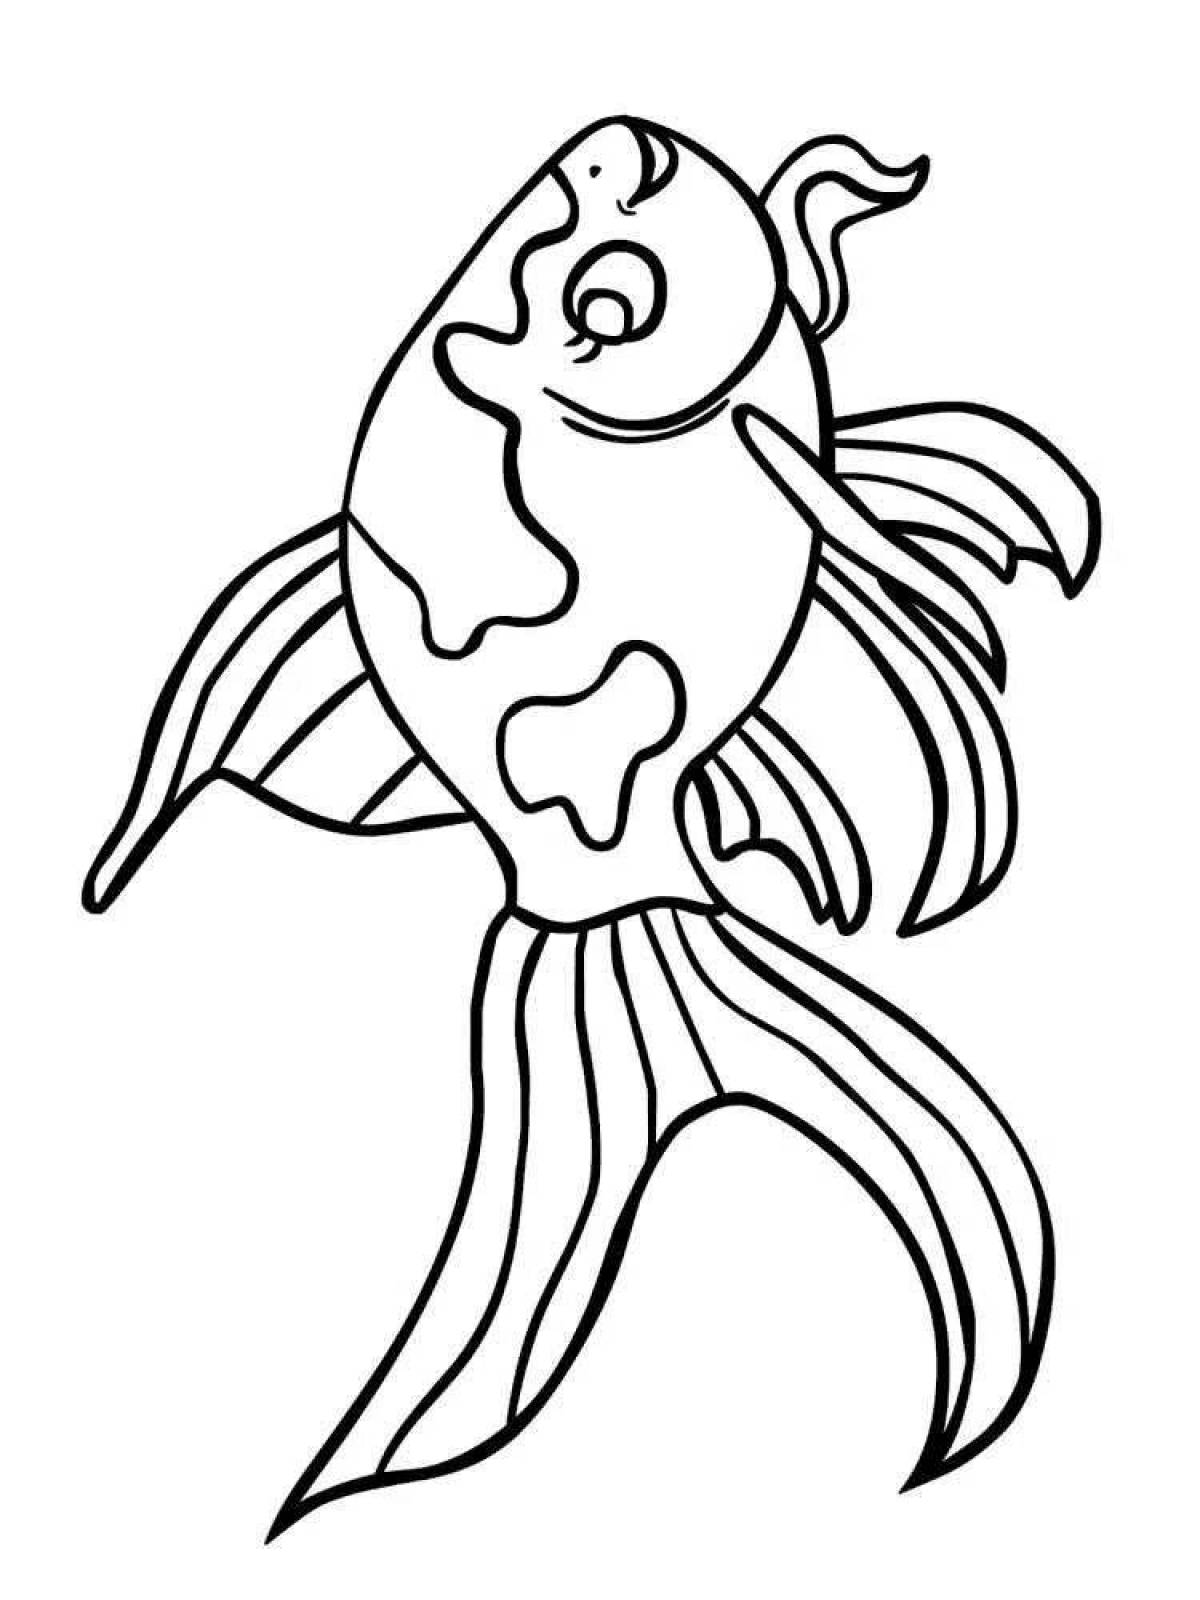 Humorous goldfish coloring book for kids